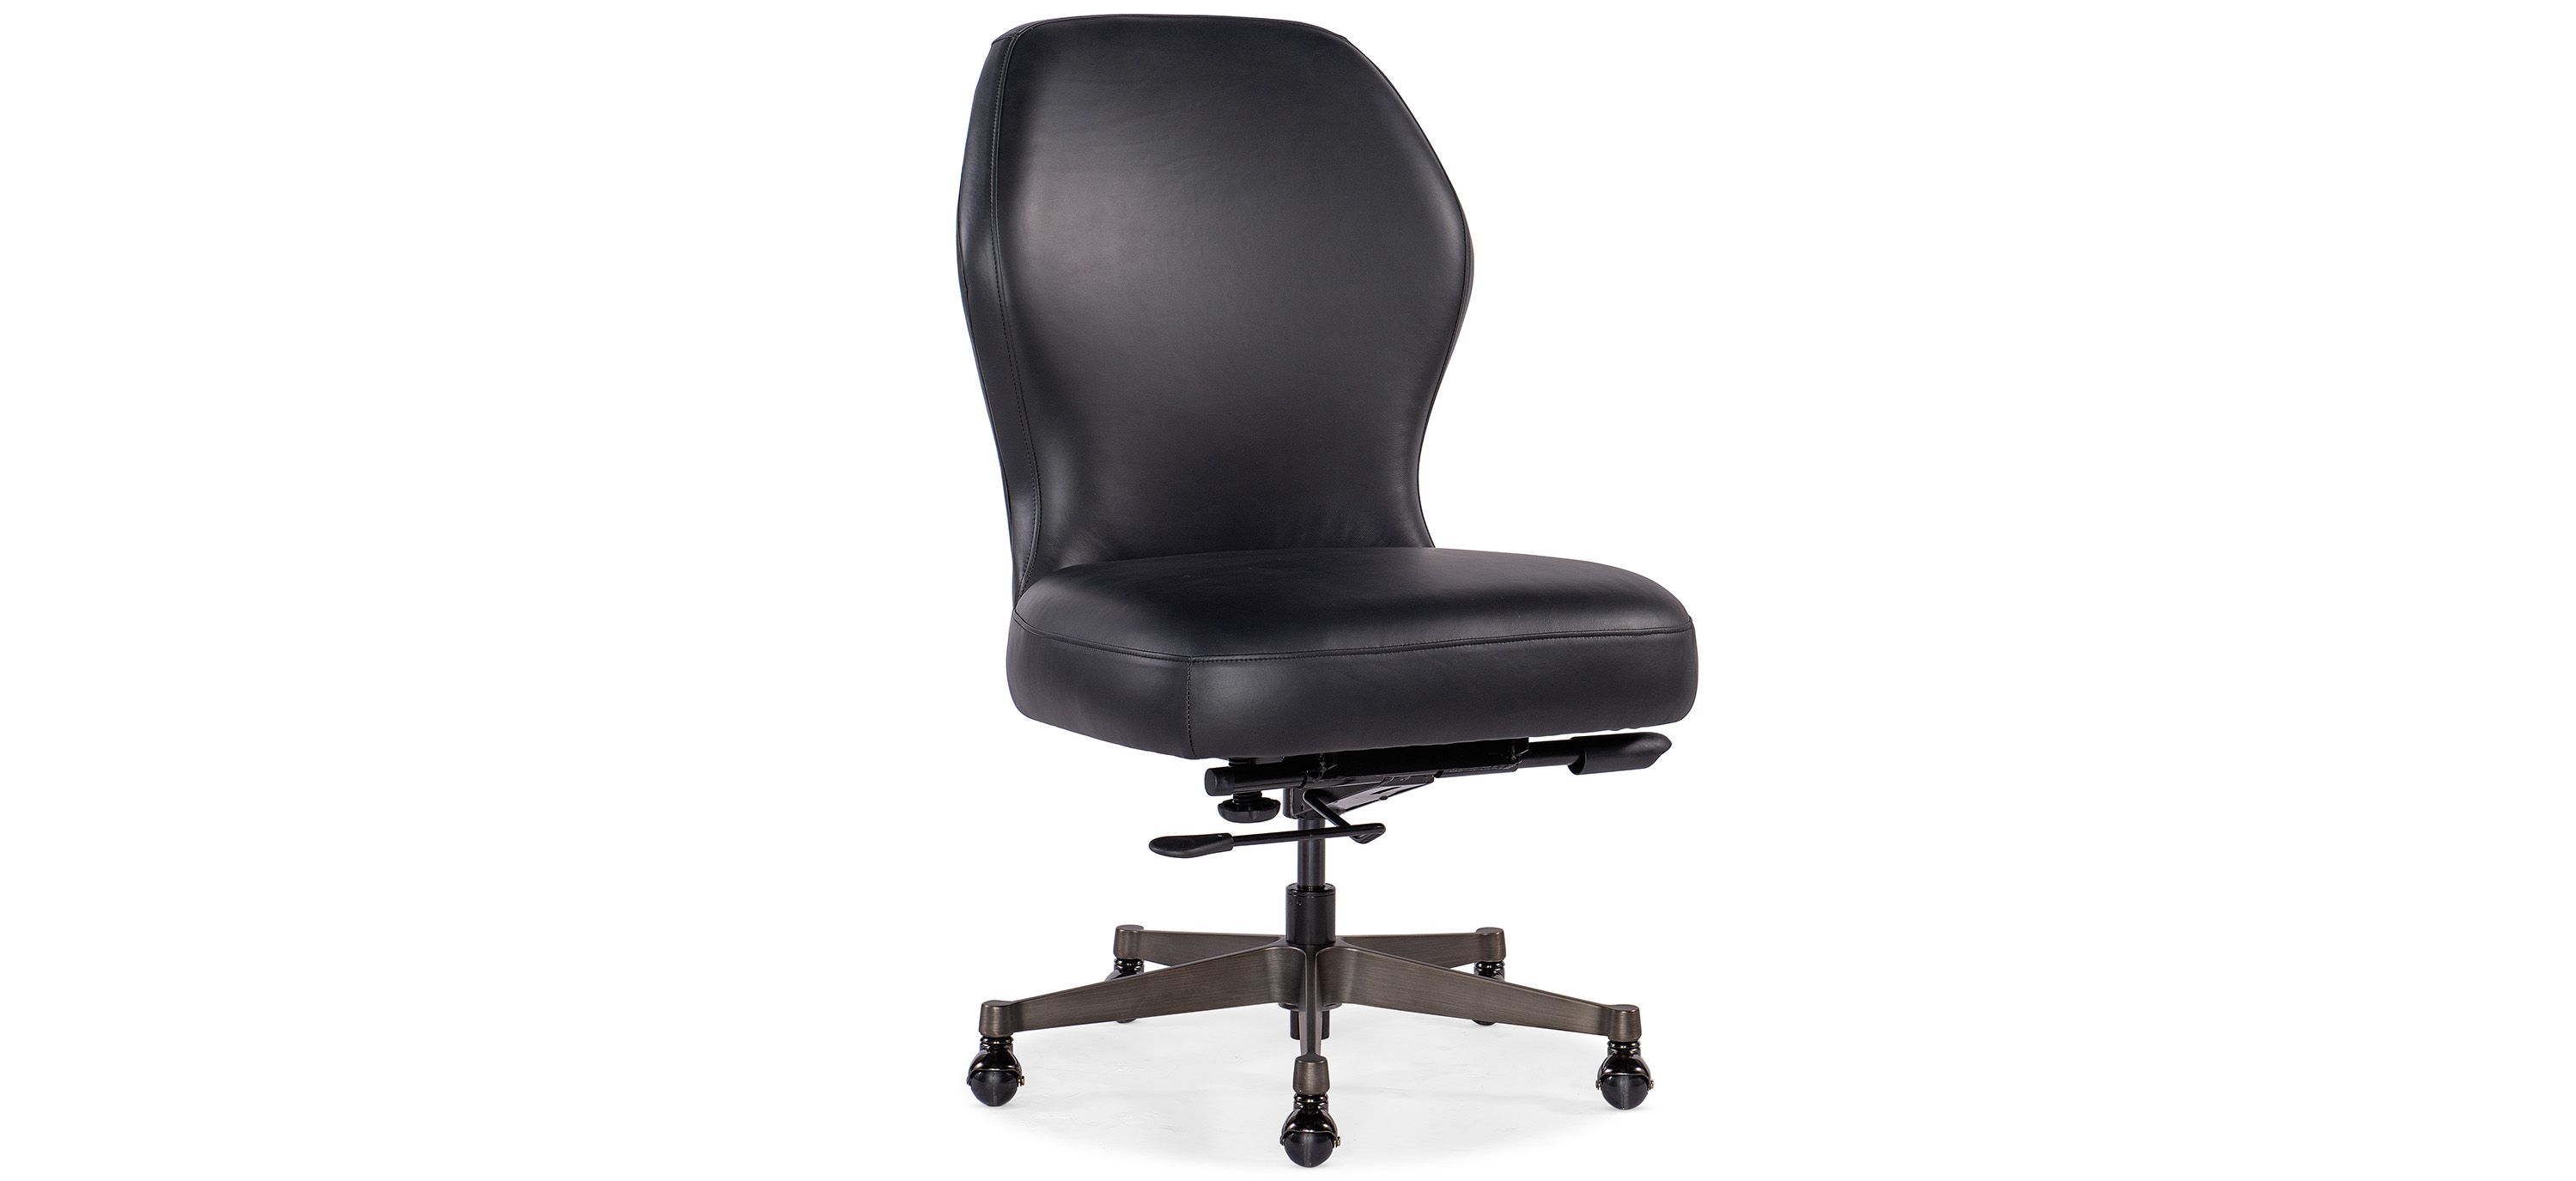 Executive Swivel Tilt Chair